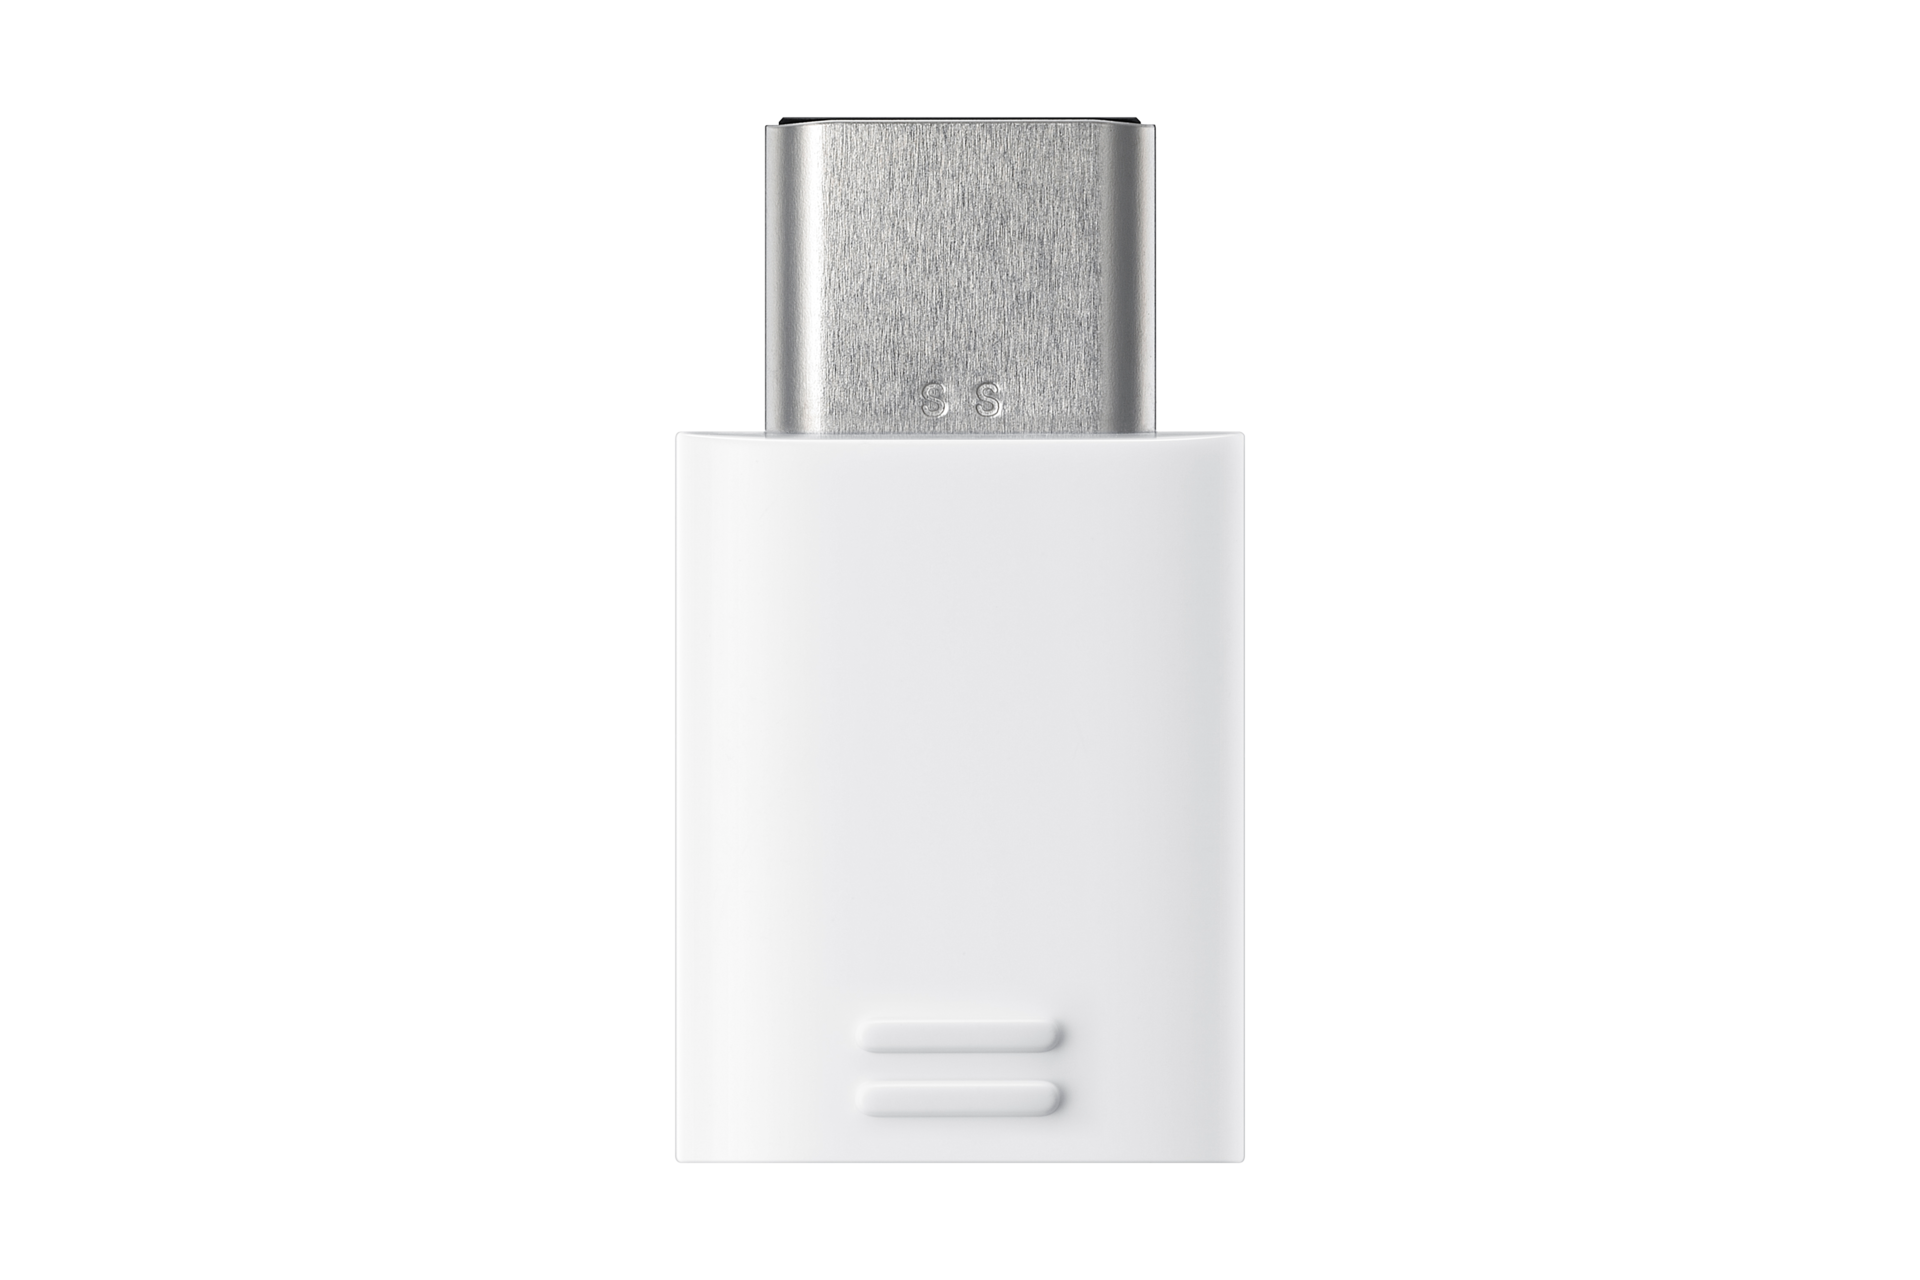 Samsung de téléphone portable Cordon [1x USB - 1x Micro USB, USB-C